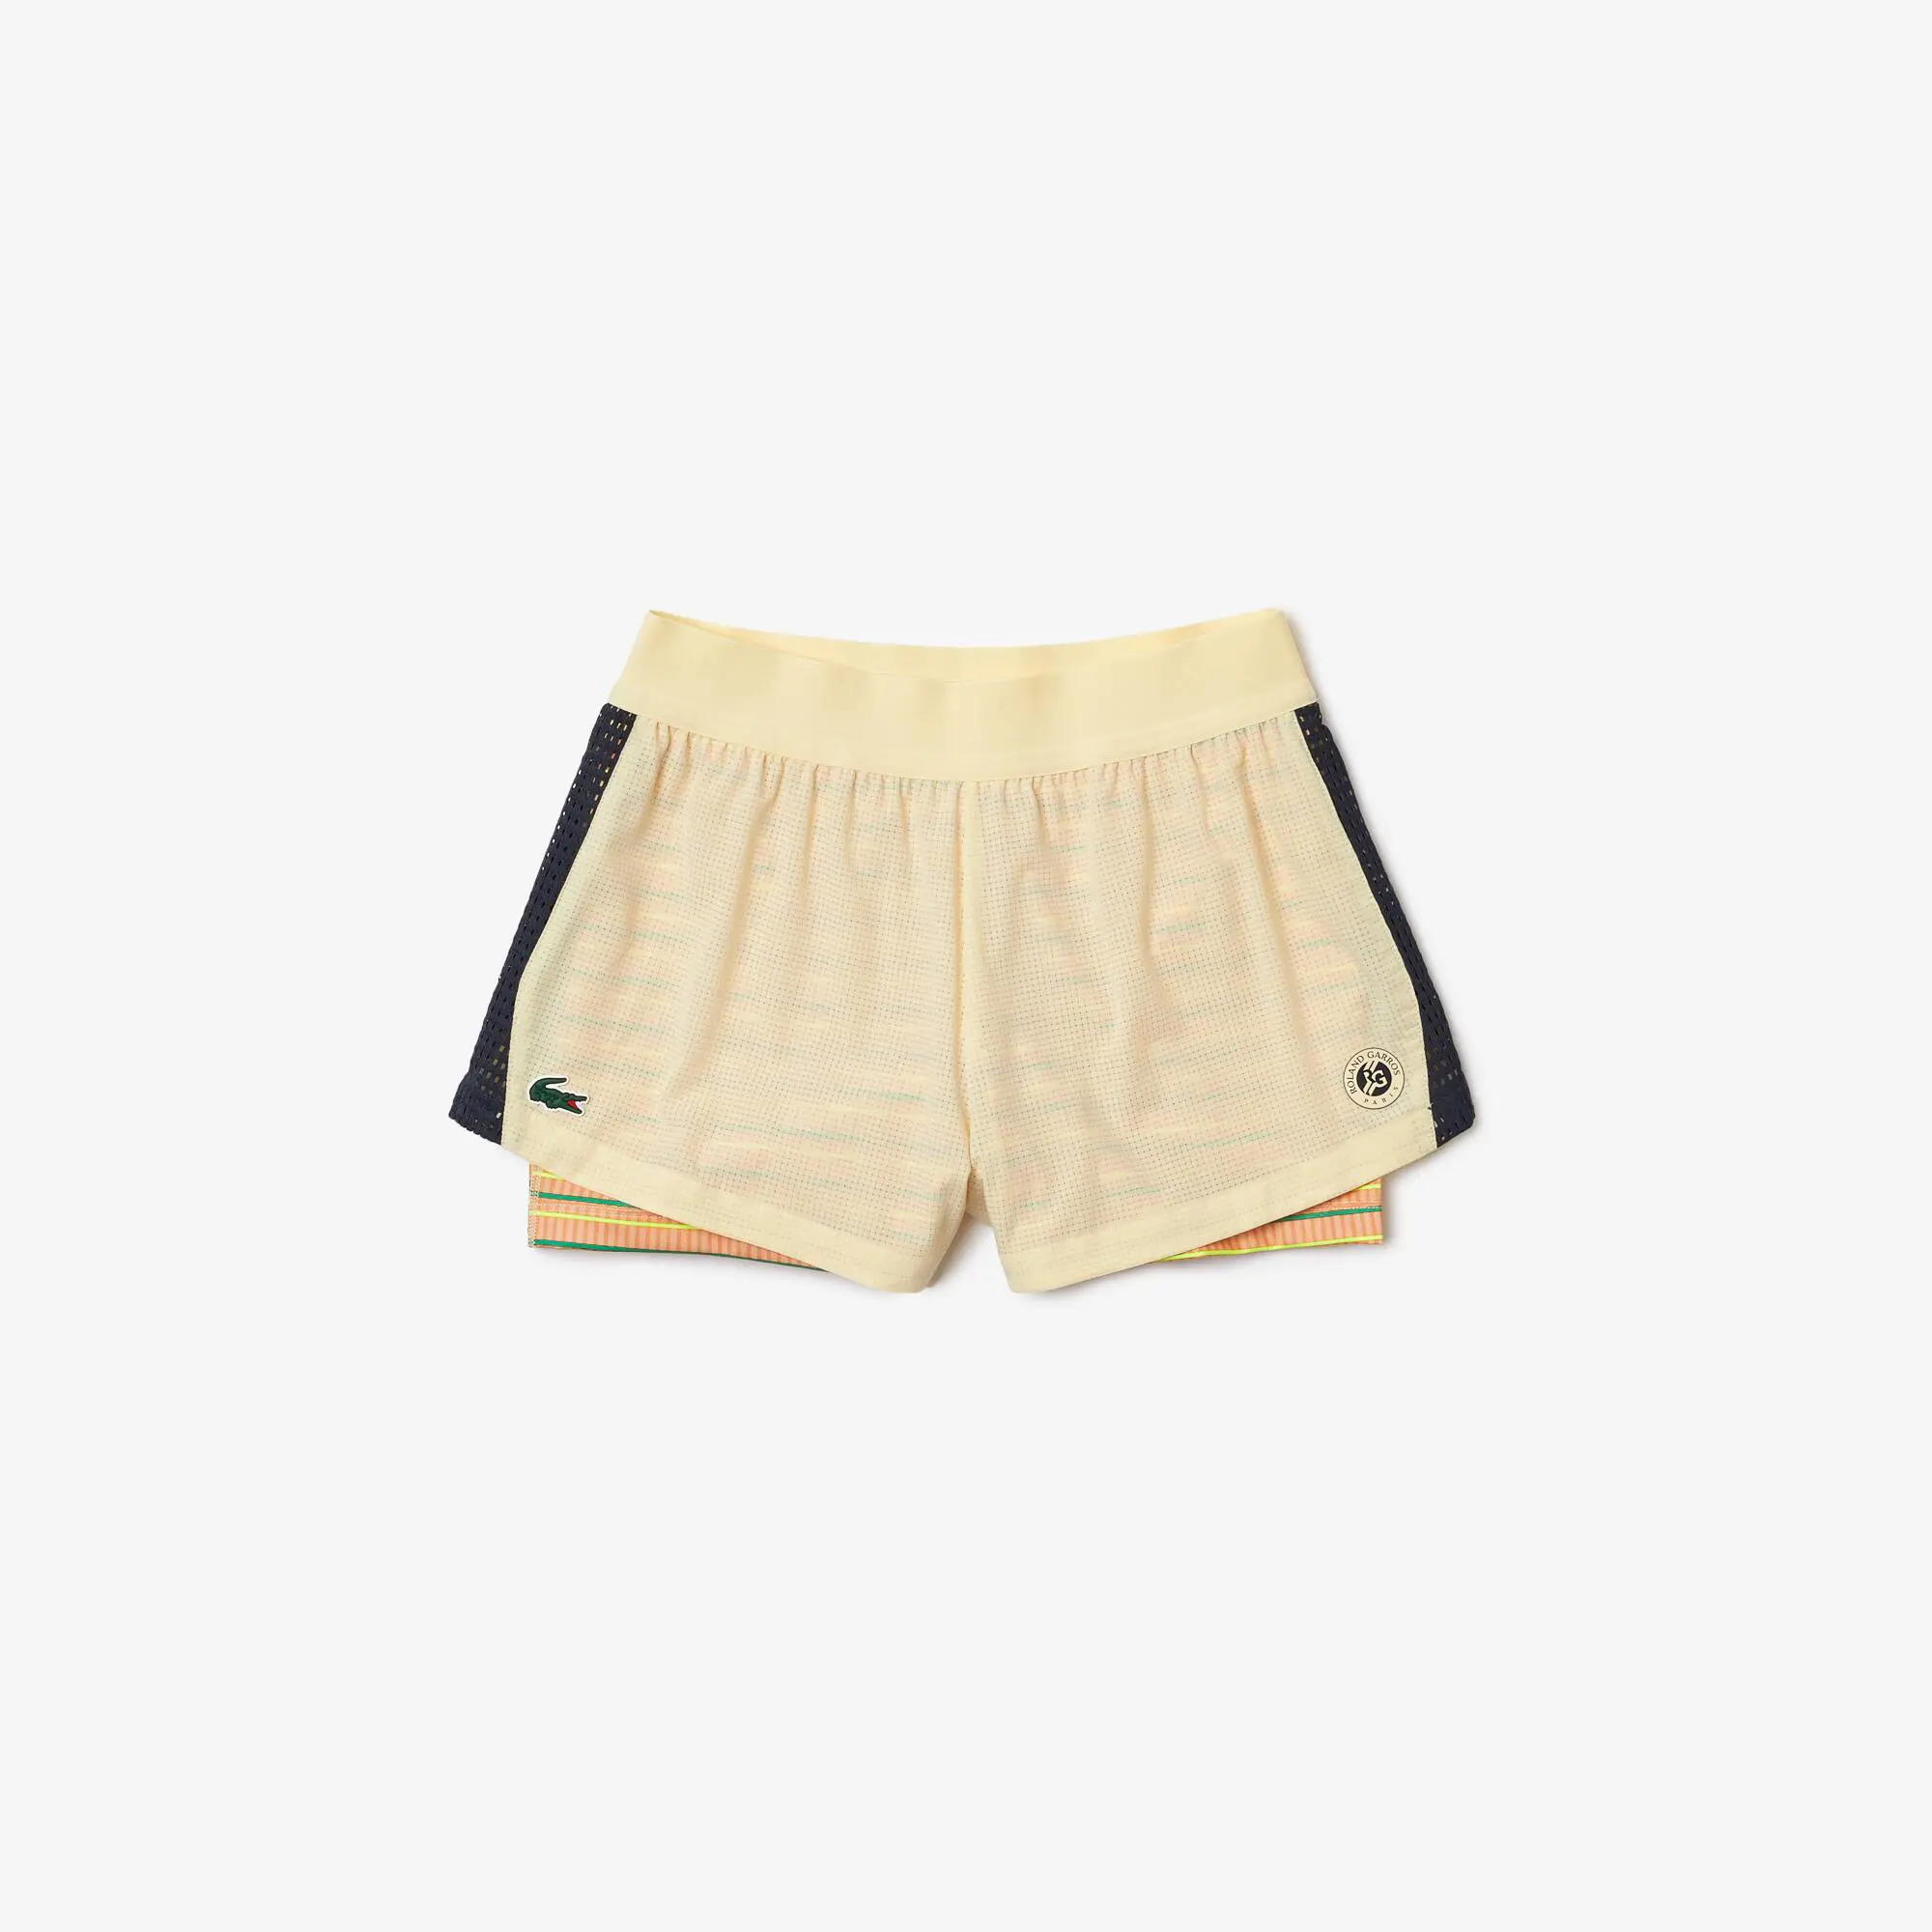 Lacoste Damen Shorts mit eingebauten Unterhosen French Open Edition. 2